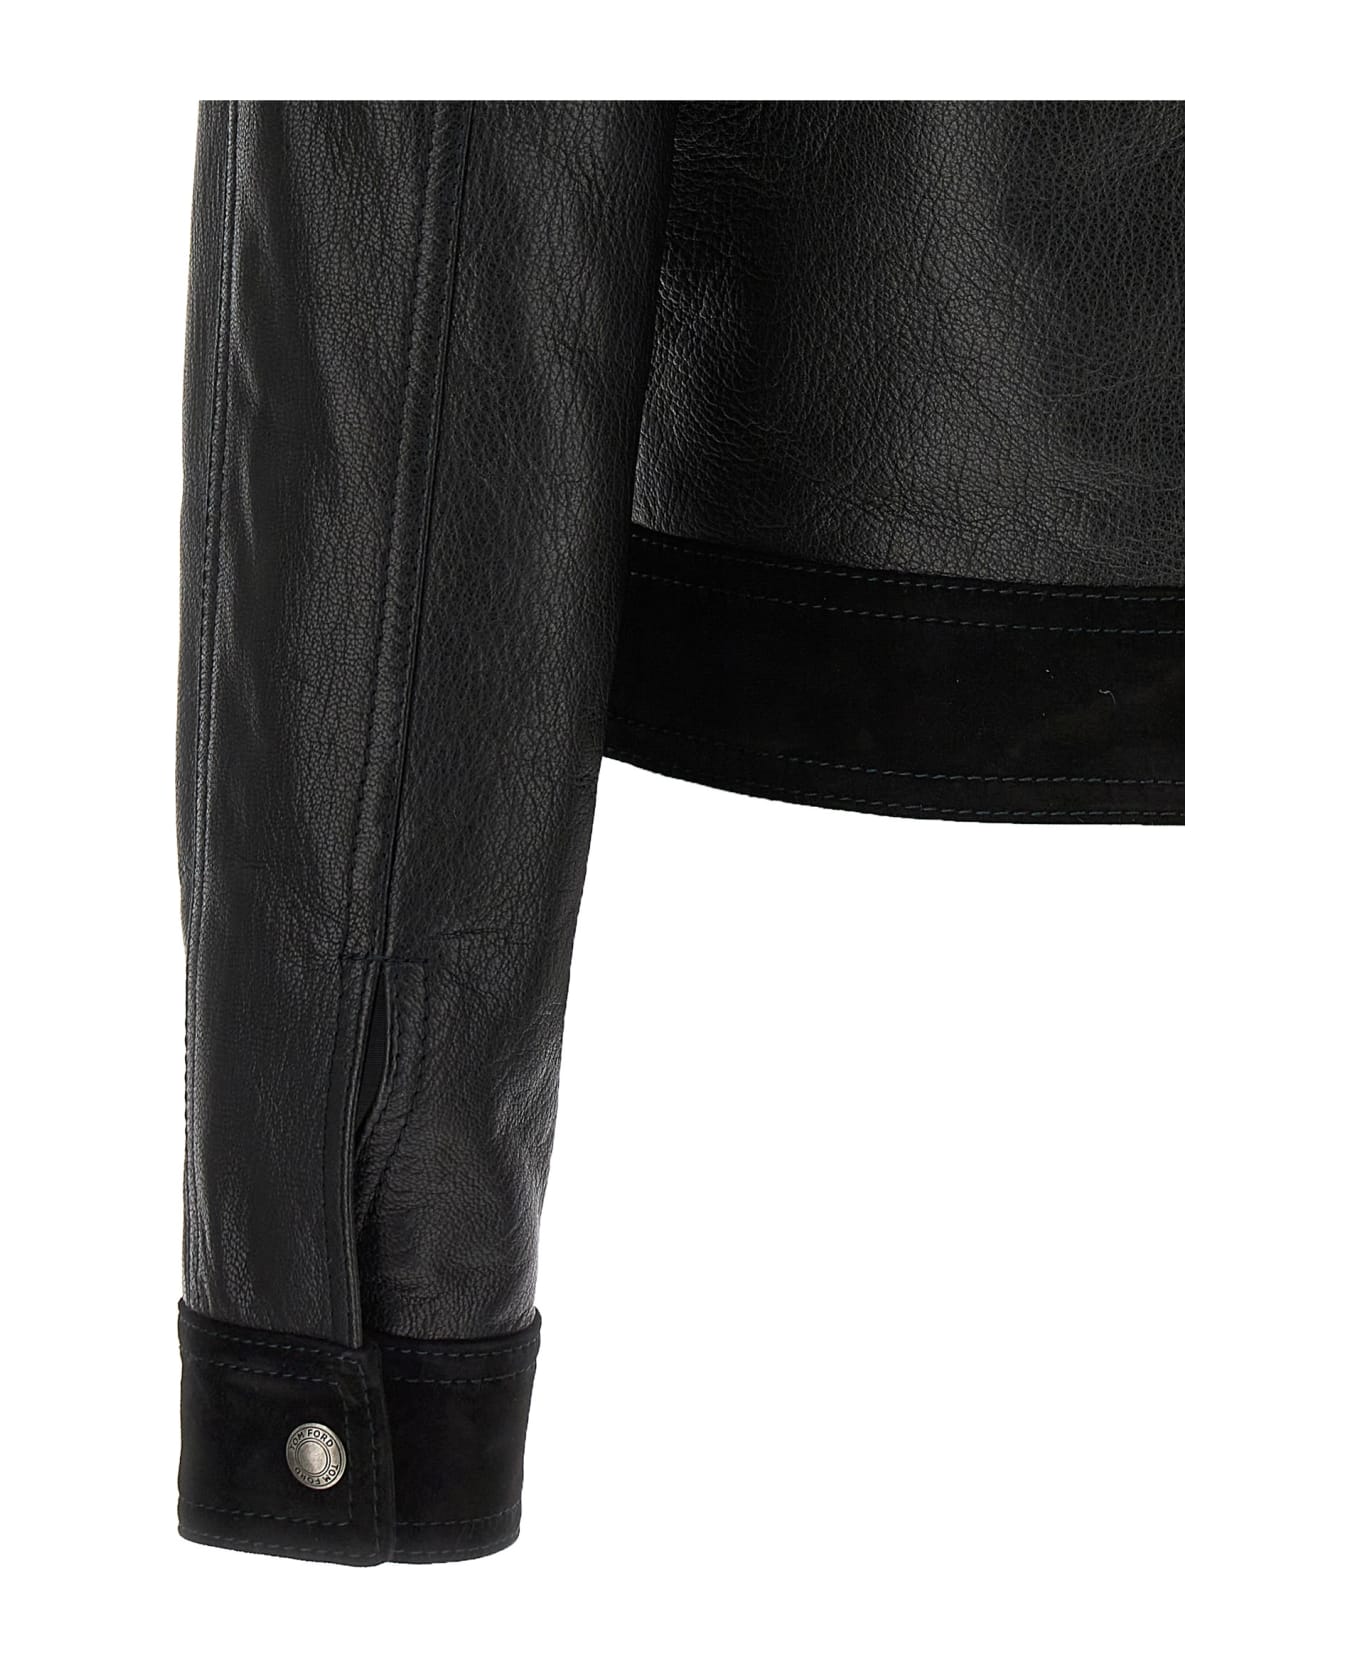 Tom Ford Leather Jacket - Black  